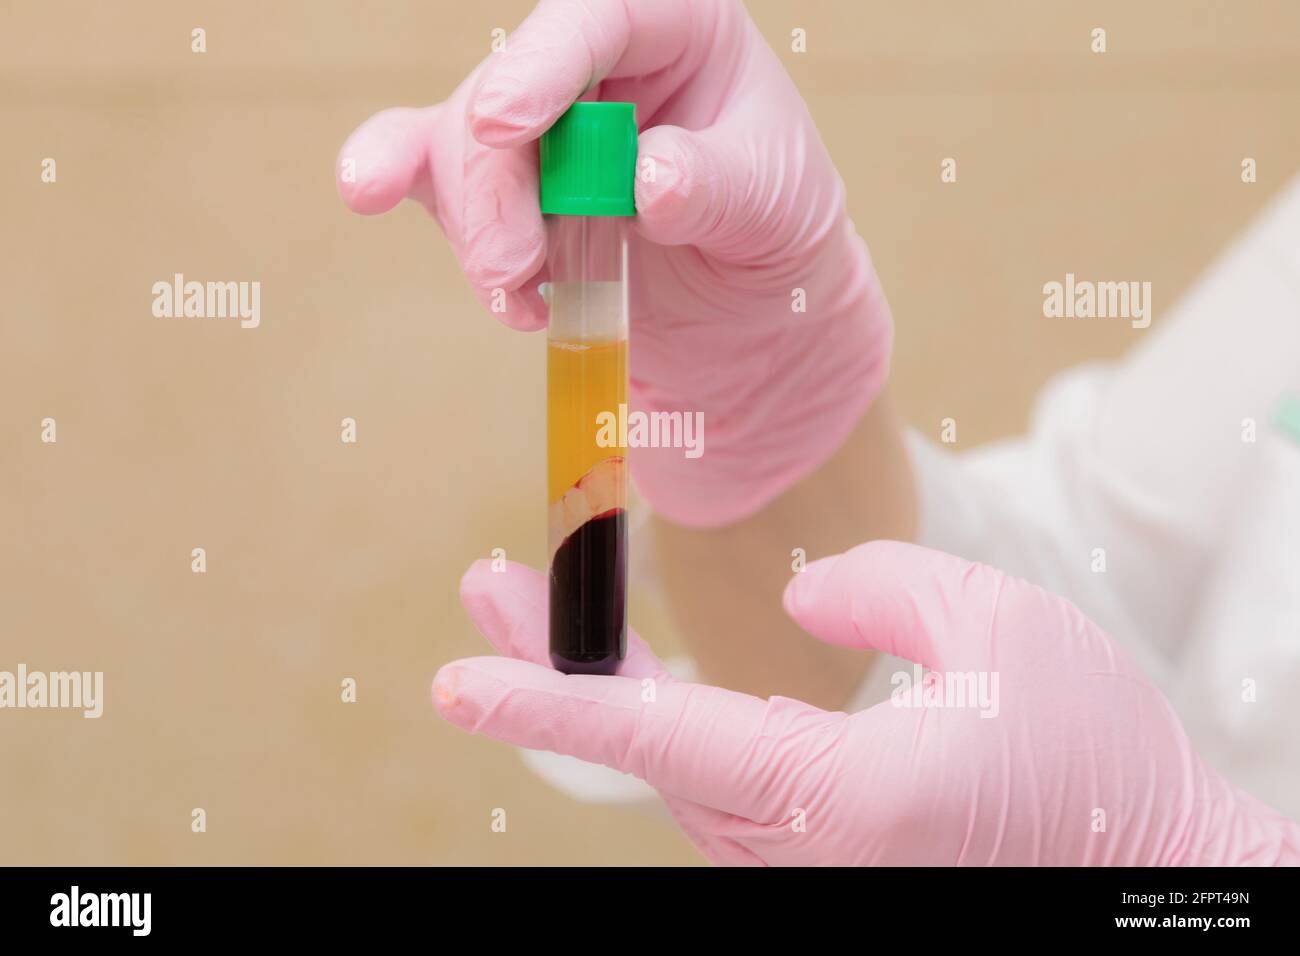 Un tube à essai avec du plasma sanguin dans la main d'un spécialiste. Plasmolifting, cosmétologie médicale. Banque D'Images